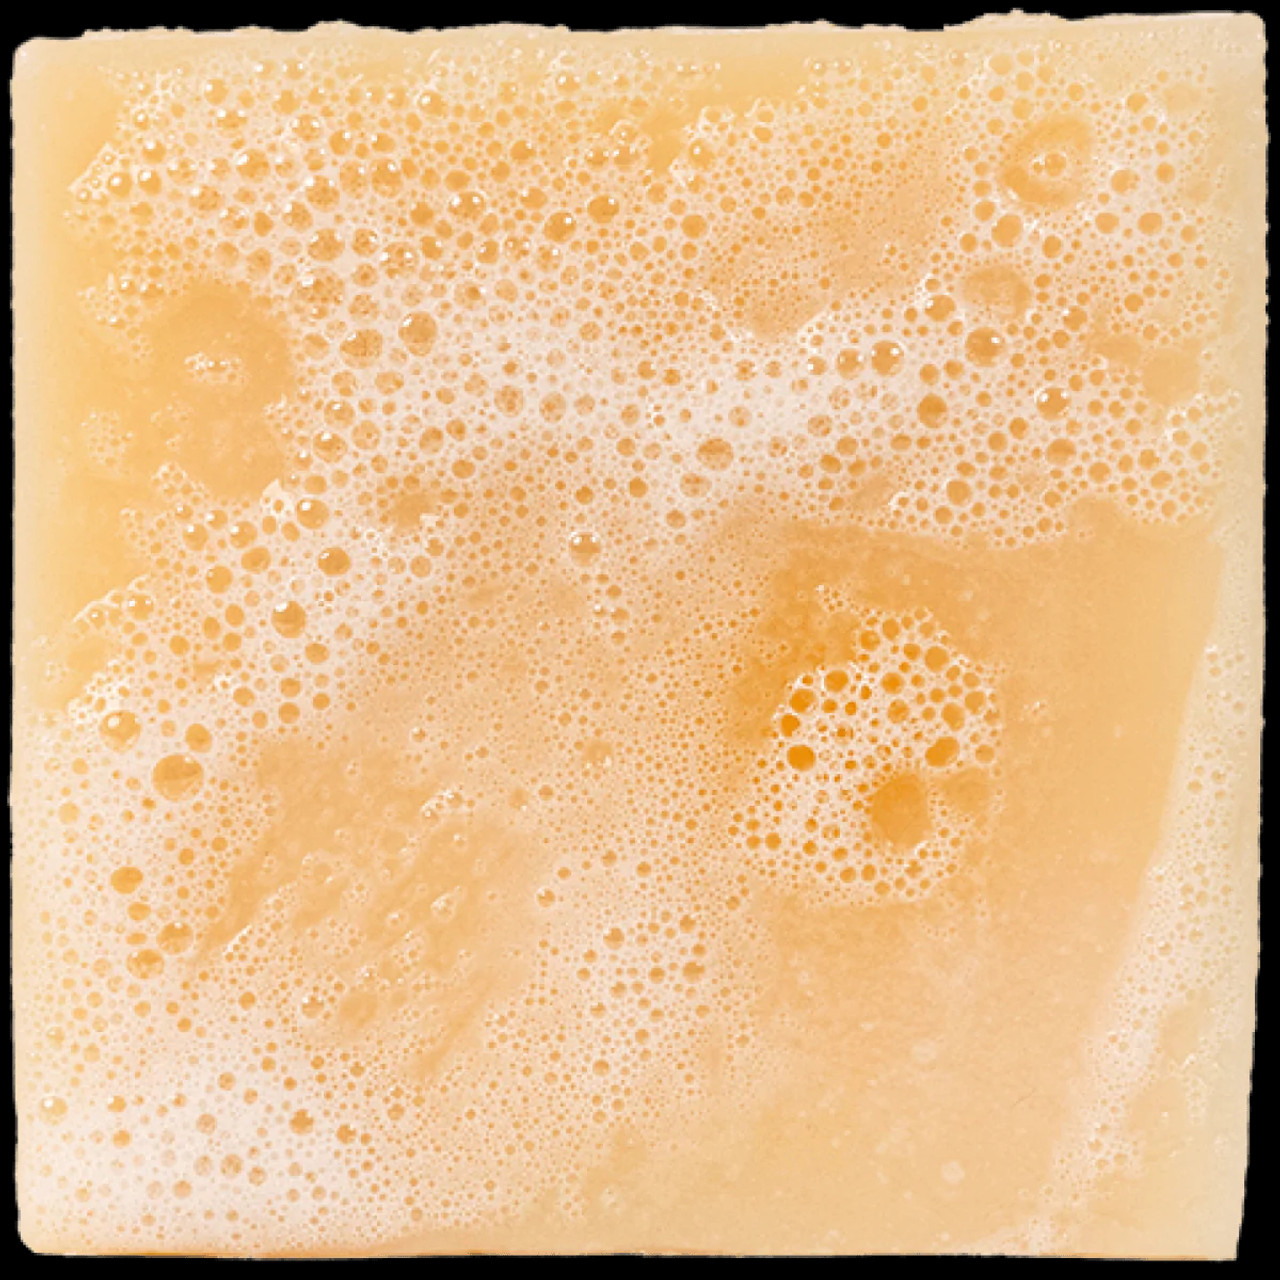 Dr Squatch Natural Handcrafted Soap - [ Alpine Sage ] - 5 oz Bar